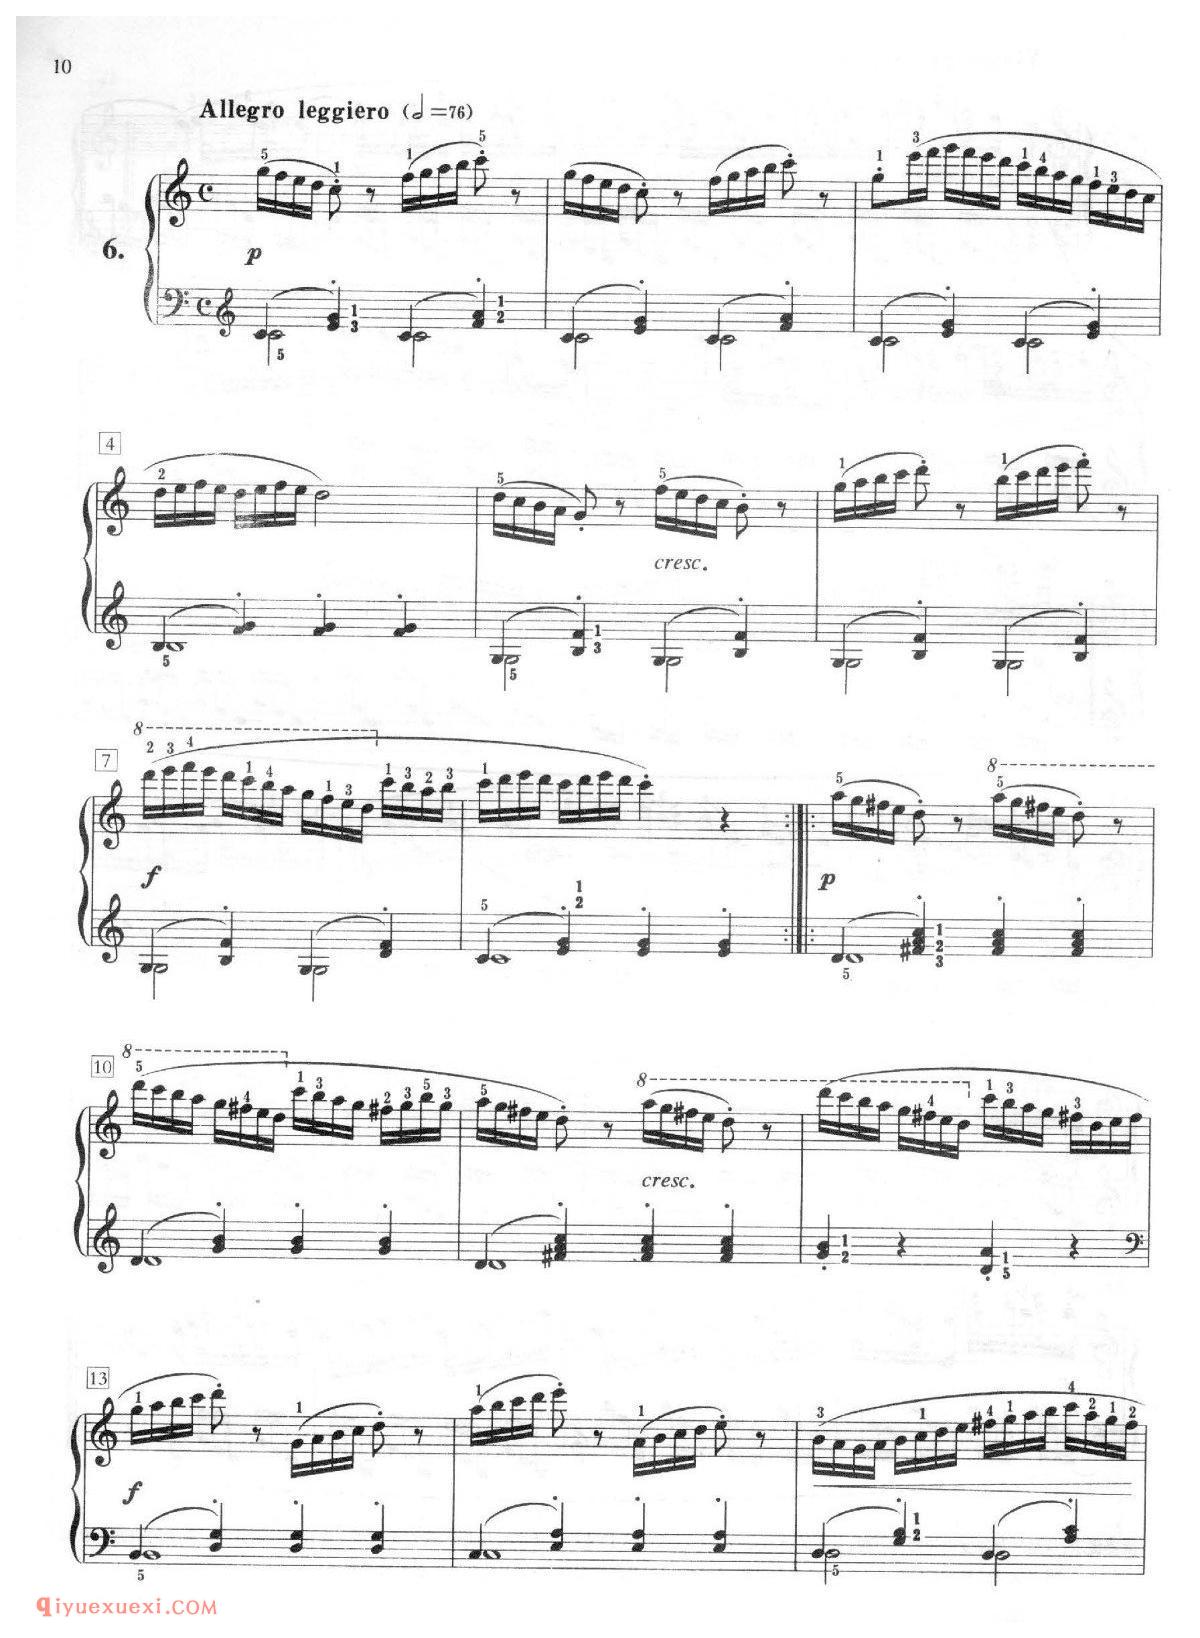 车尔尼钢琴流畅练习曲作品849(1-30首)刘一心版